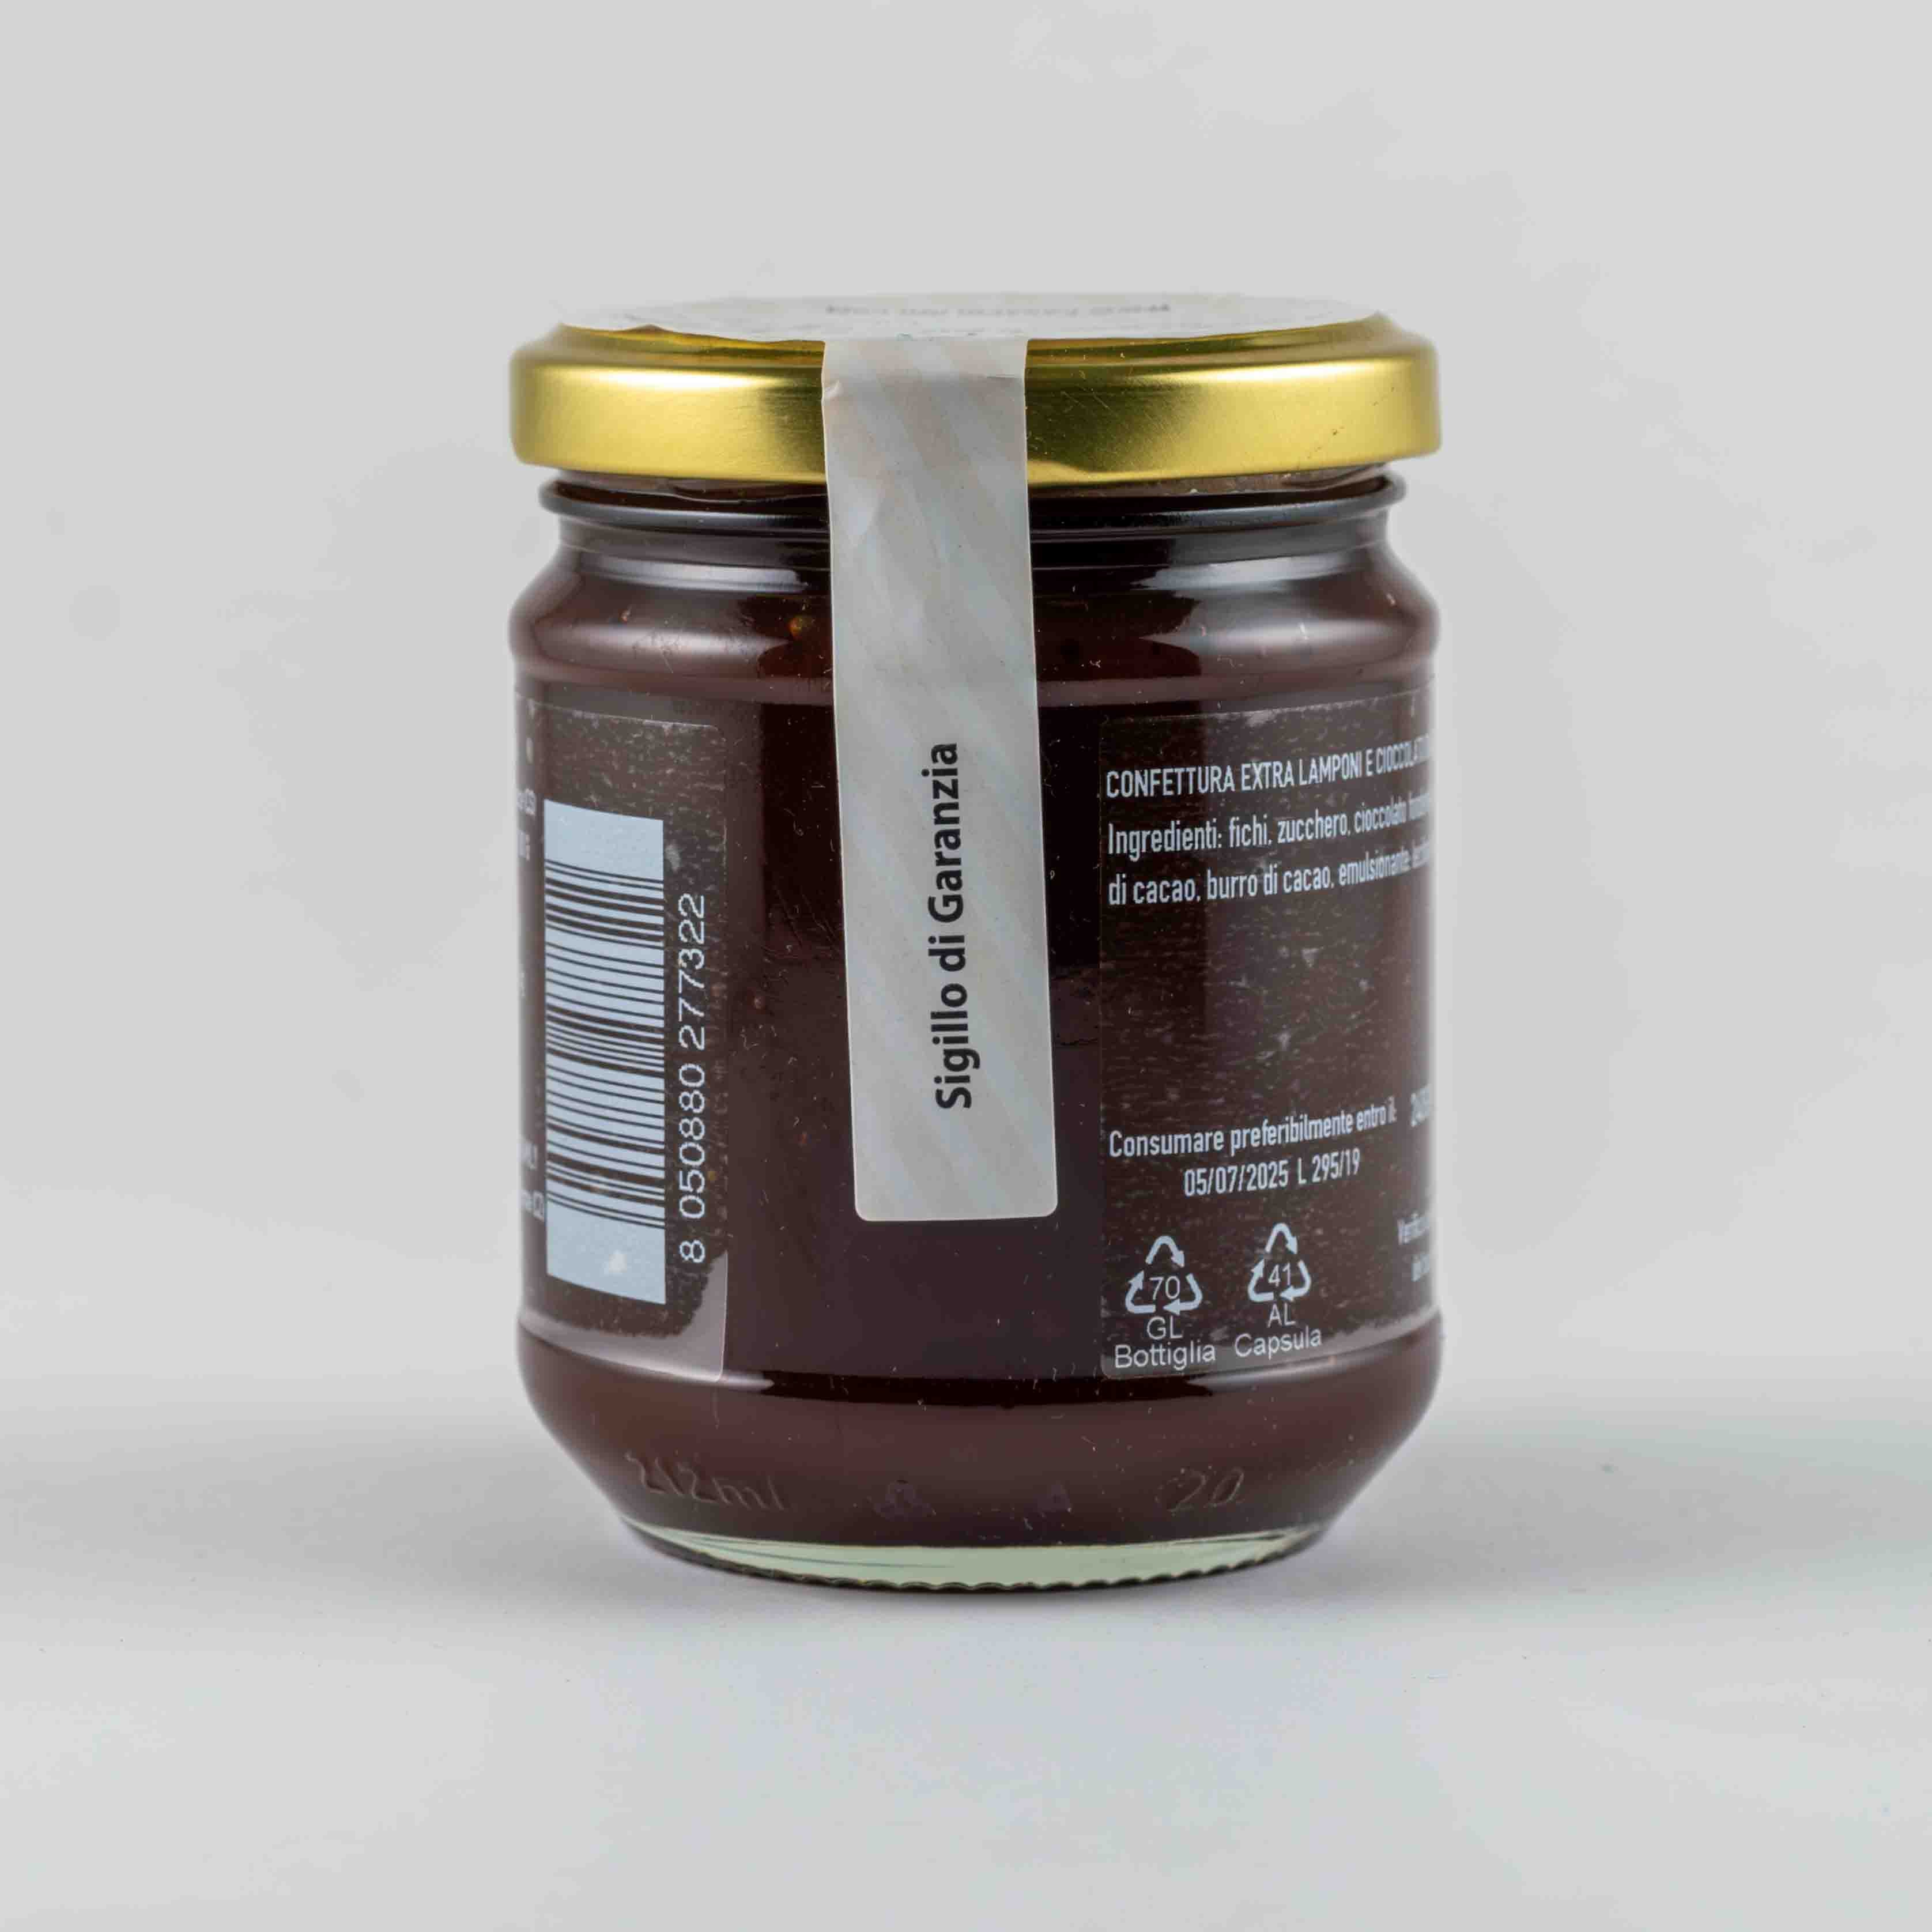 Confettura Extra di Lamponi e Cioccolato Bianco 240 gr - Casafolino.com